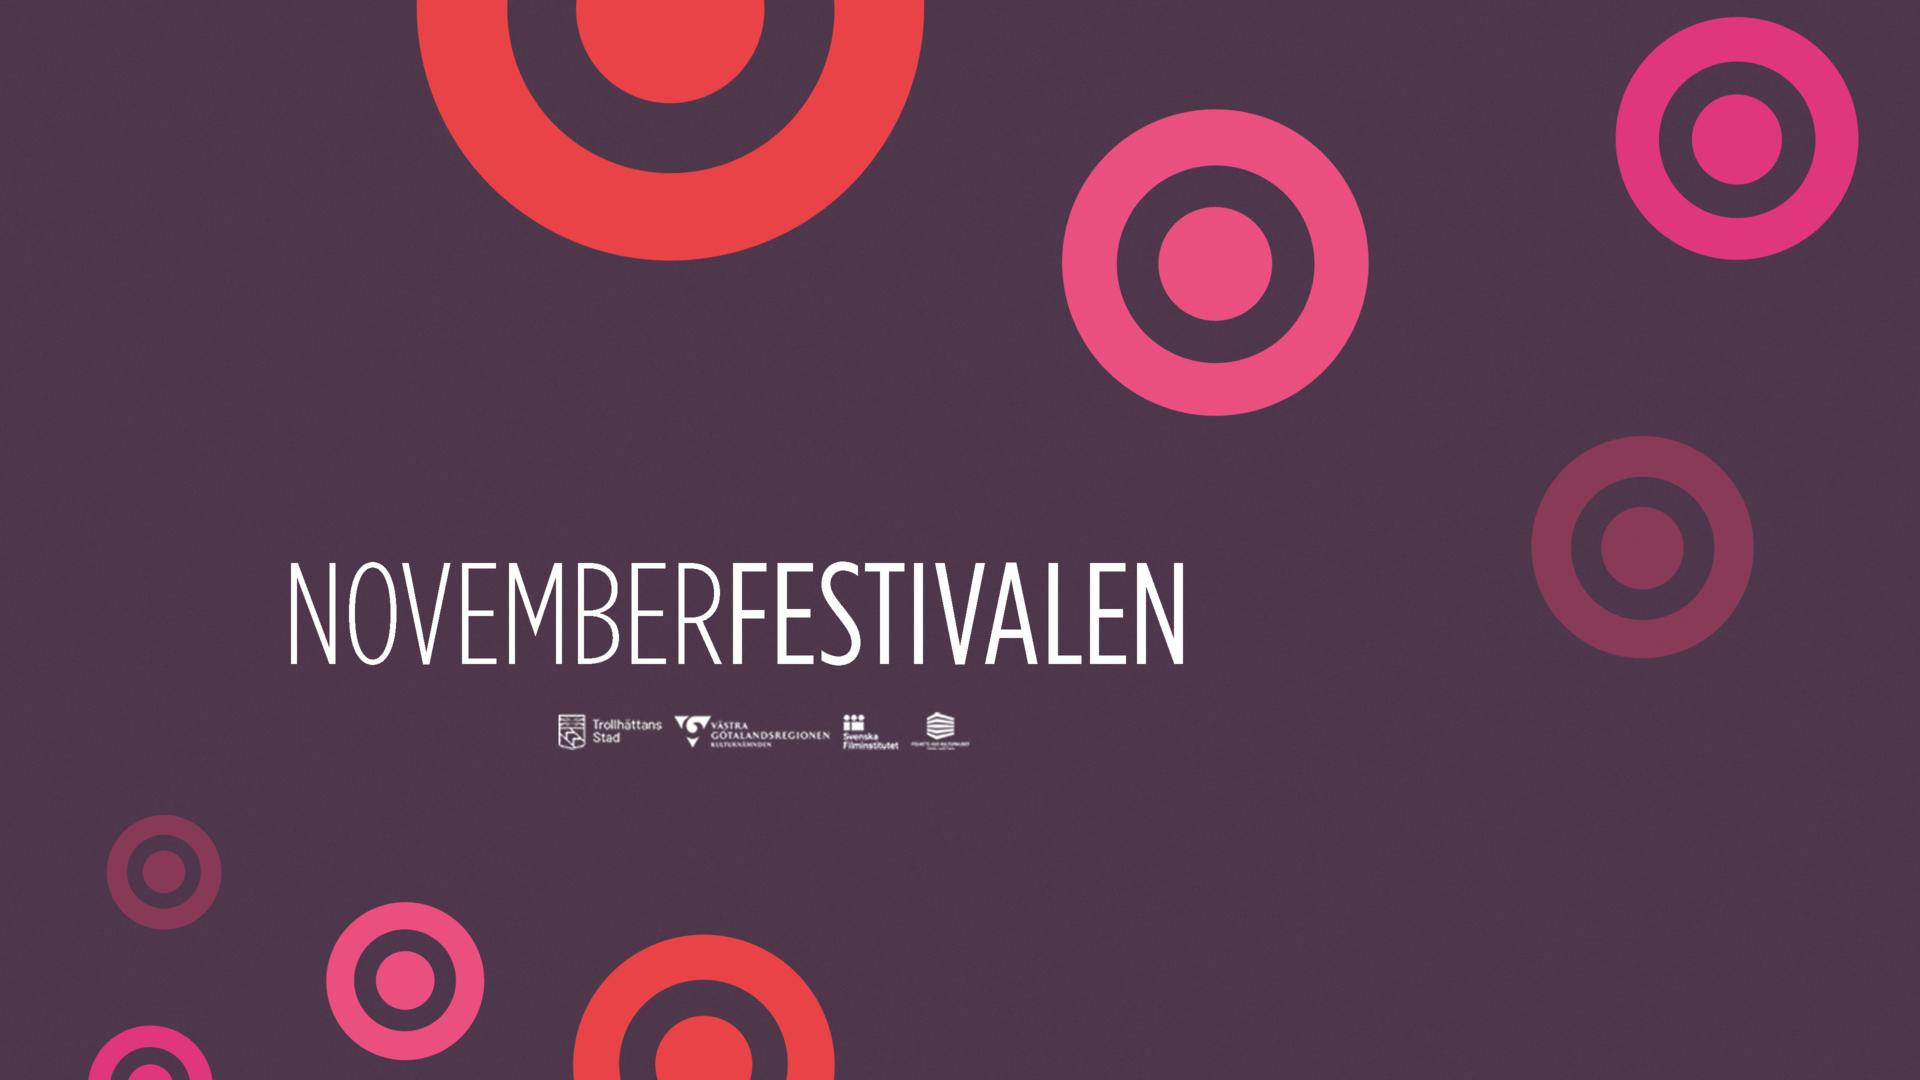 Novemberfestivalen Inauguration